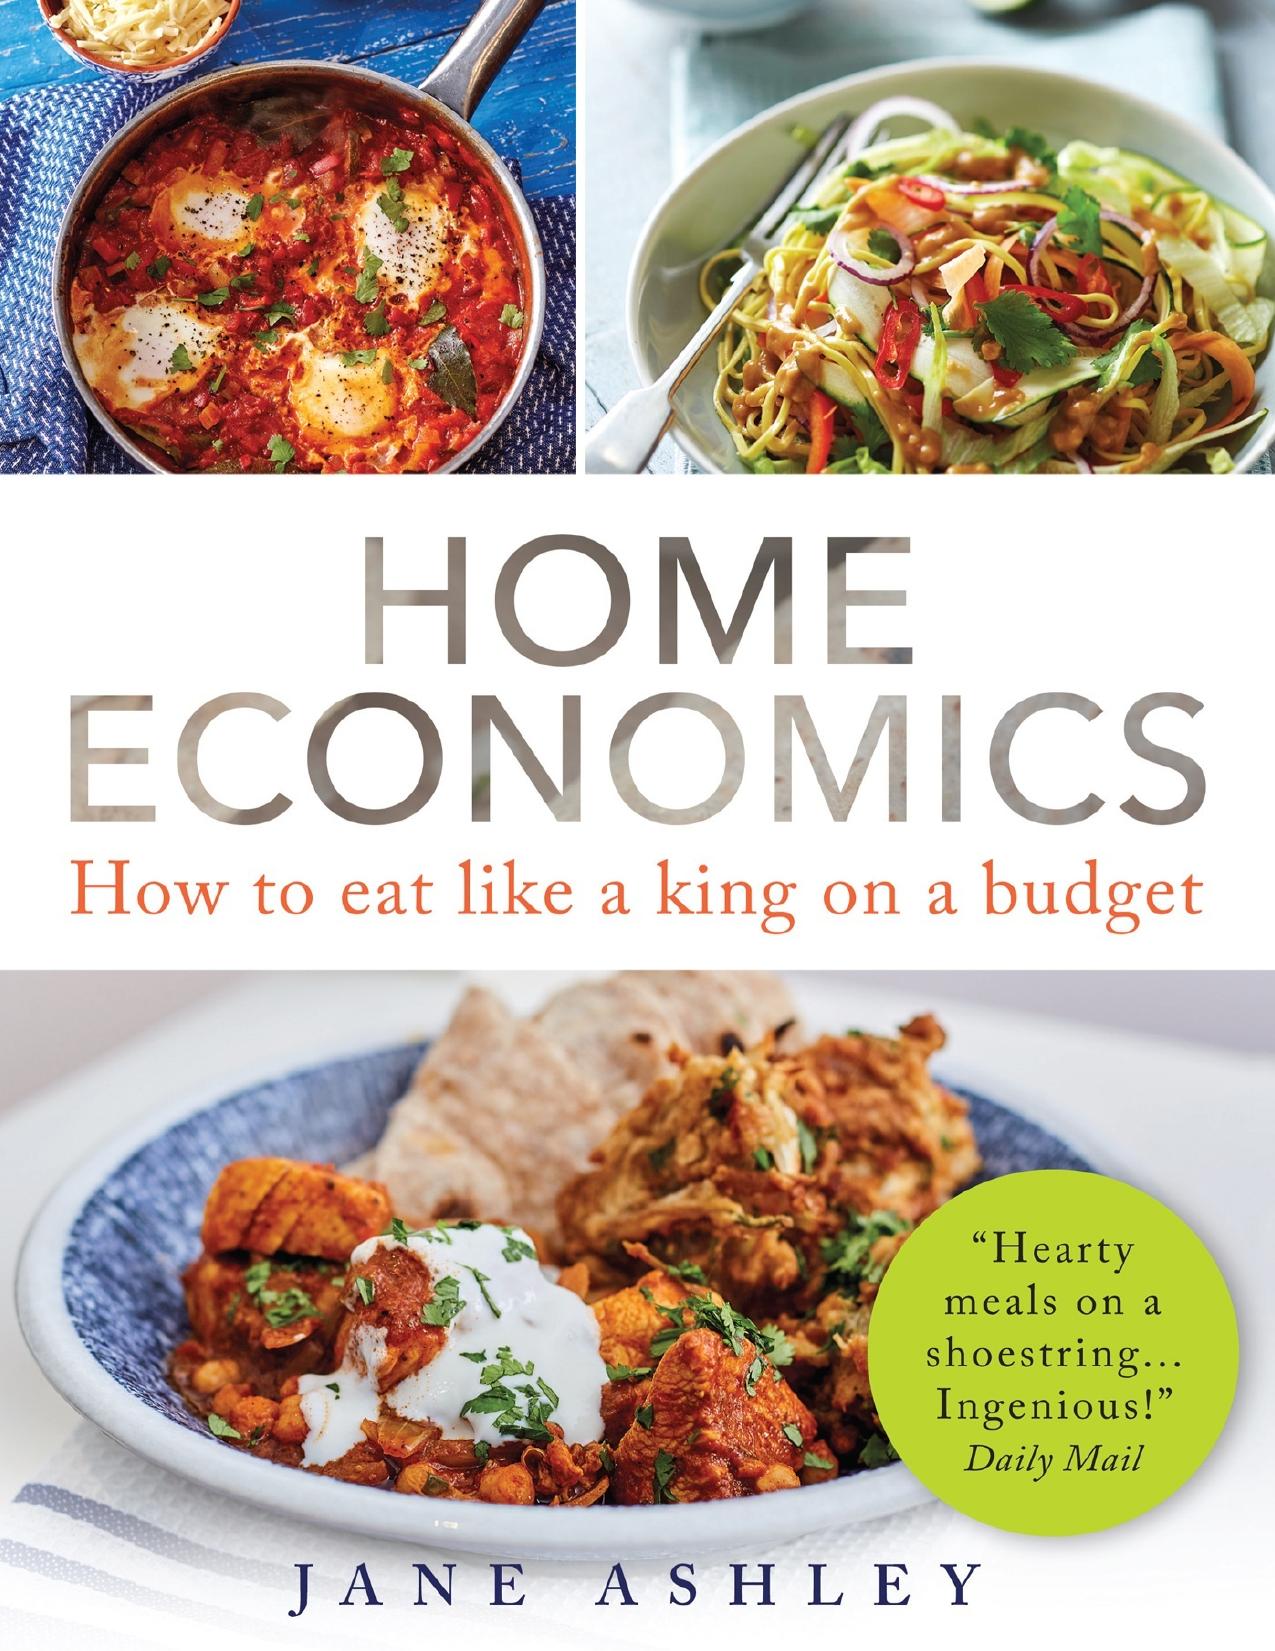 Home Economics How to eat like a king on a budget - PDFDrive.com